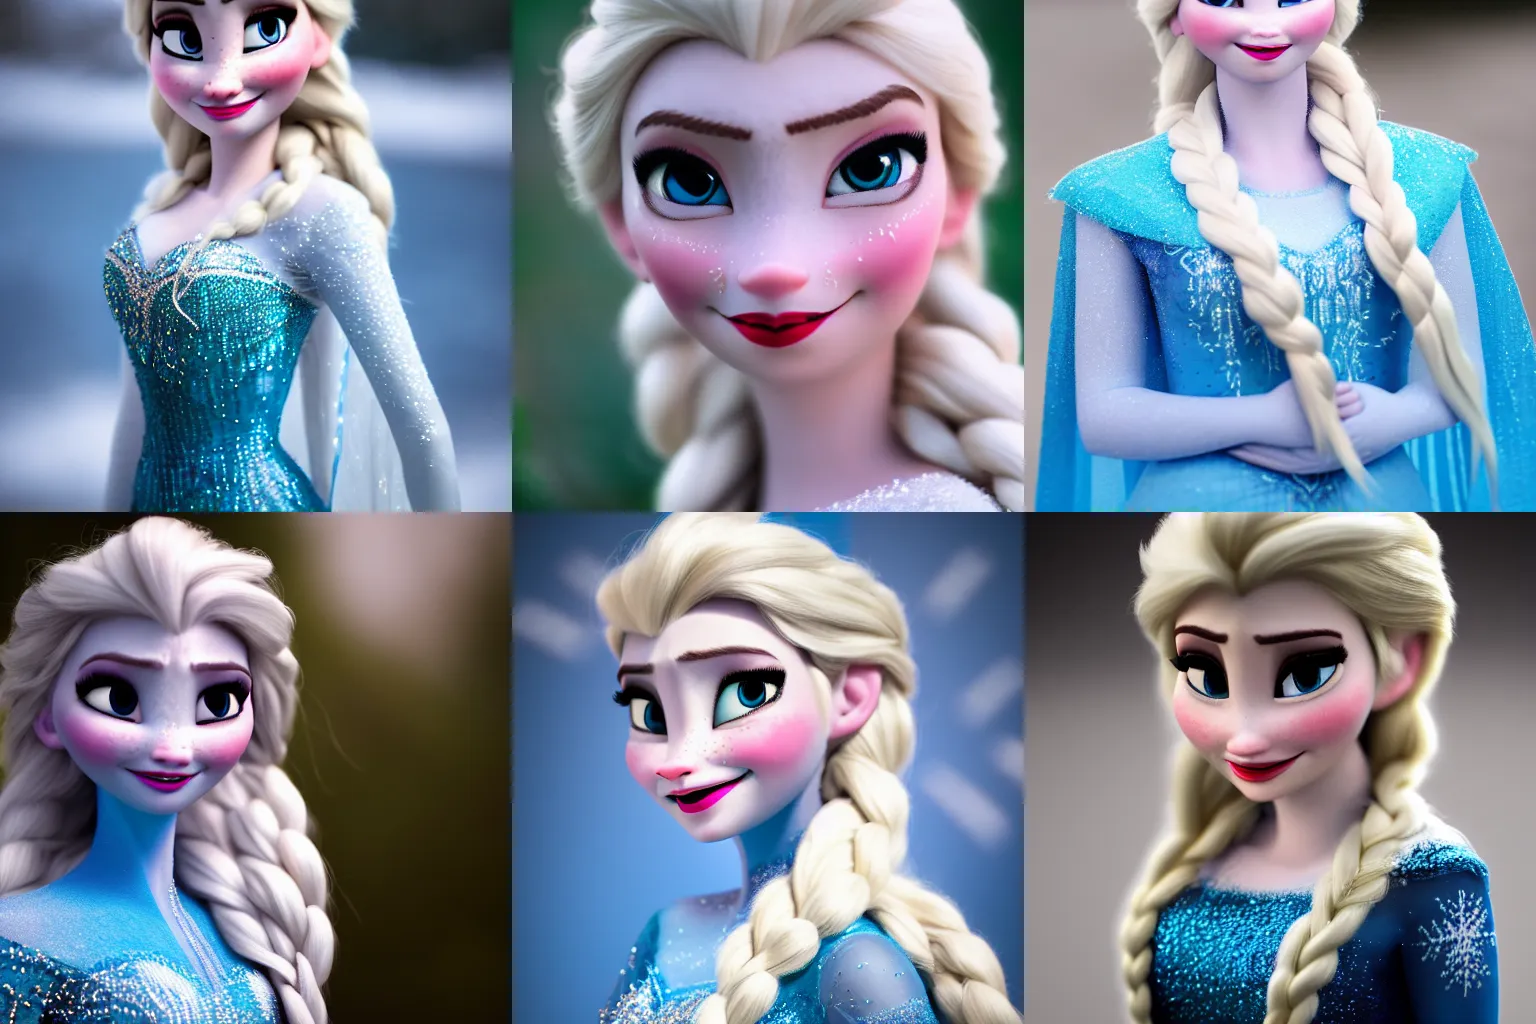 Prompt: portrait of Elsa from Frozen, real life photo, 35mm lens f/1.4, bokeh, trending on artstation